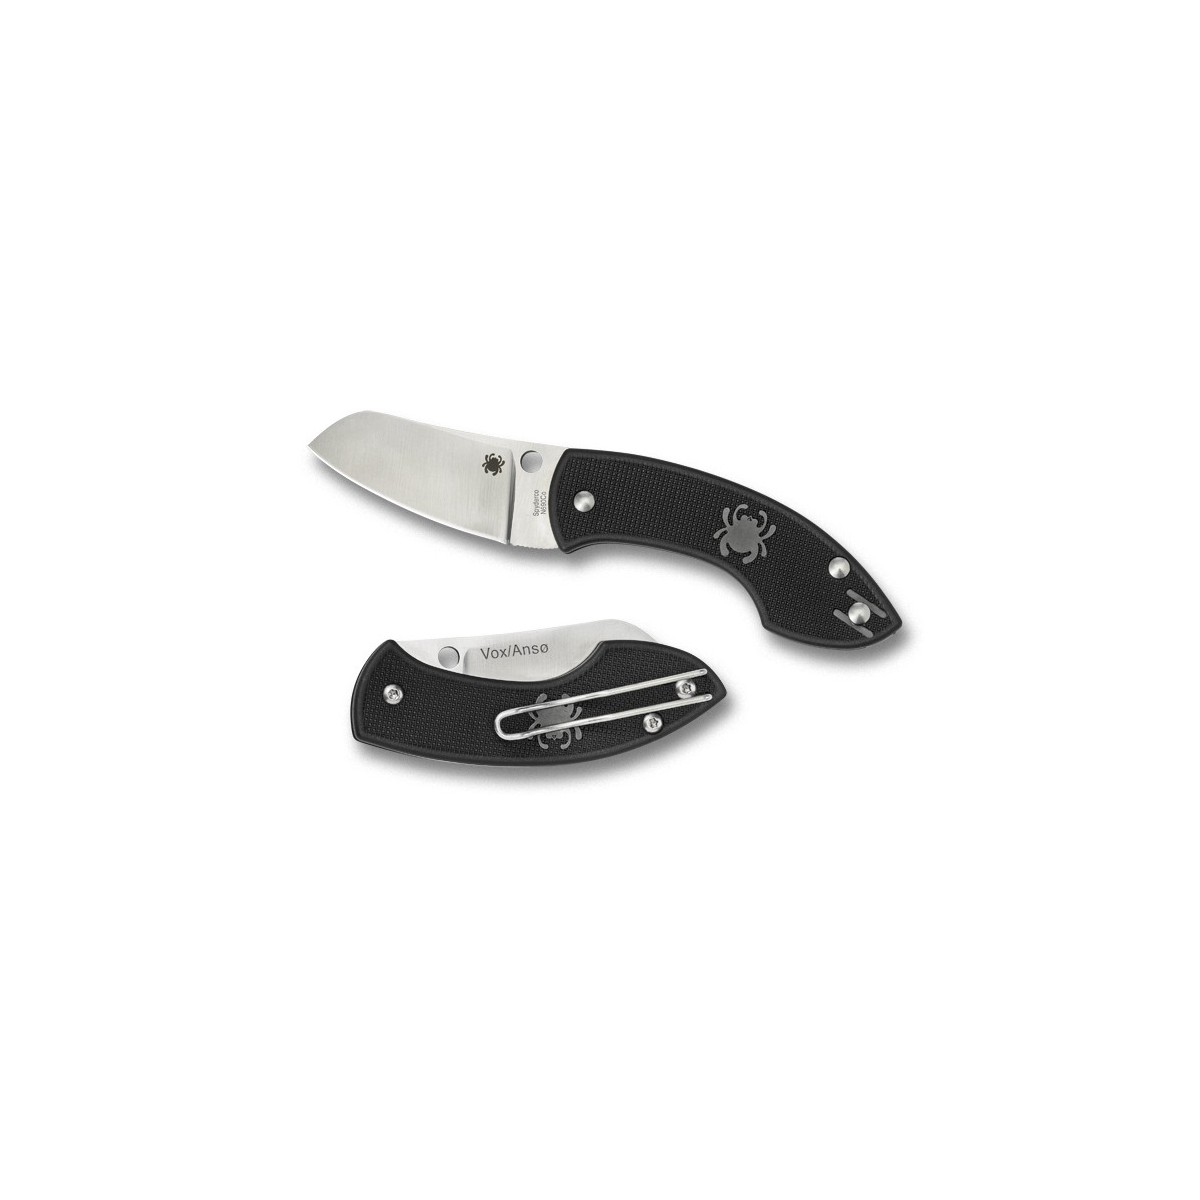 มีดพับ Spyderco Pingo Folding Knife 2.35" Plain N690CO Blade, Black FRN Handles,C163PBK